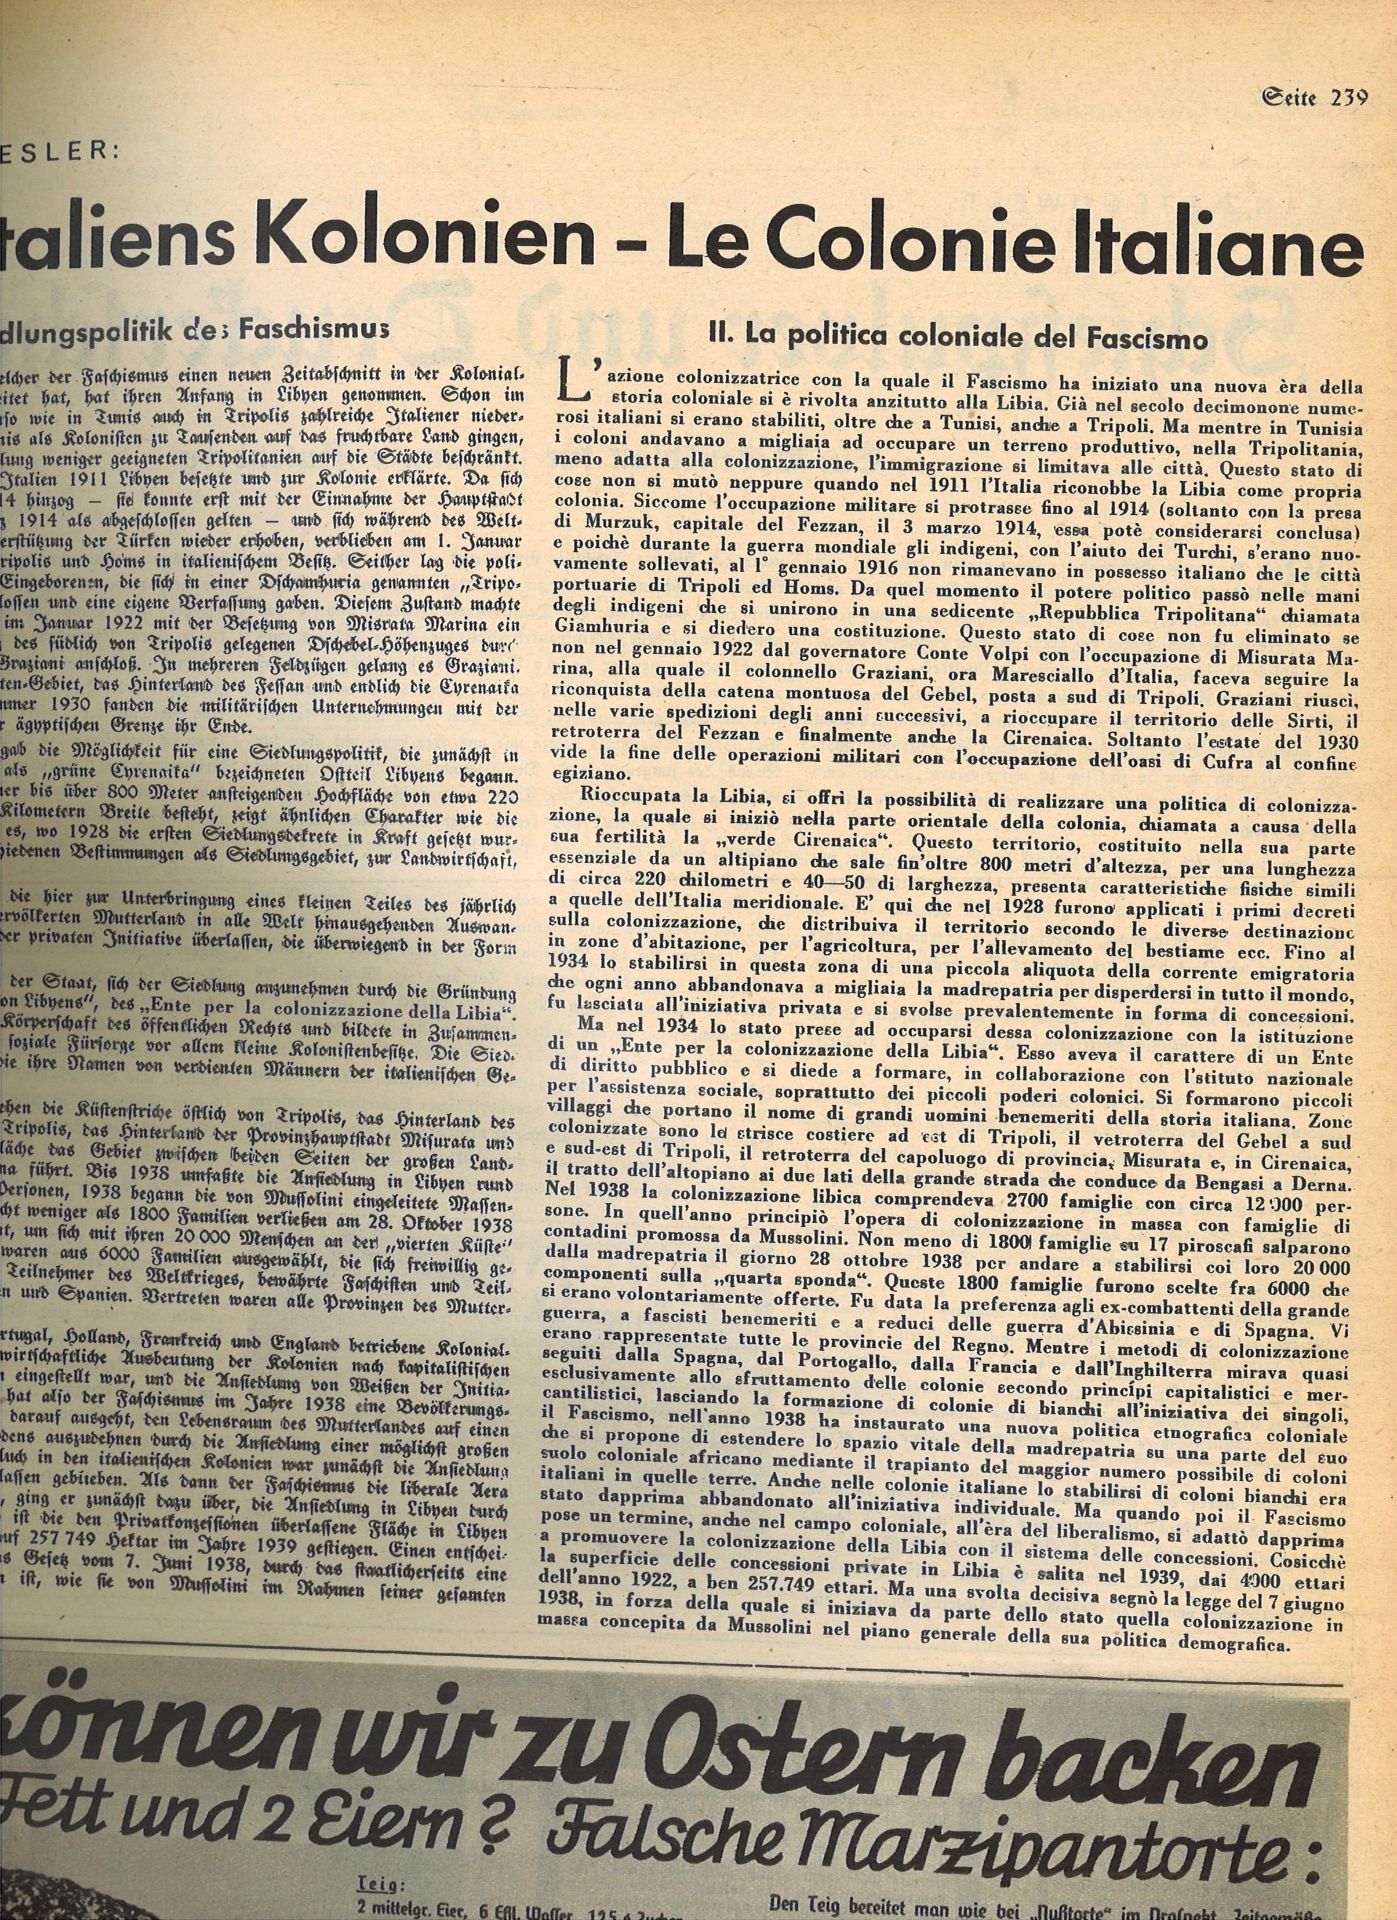 Das Bunte Blatt, 17. Jahrgang 1940, Nr. 1 - 52, gebunden. - Bild 2 aus 3